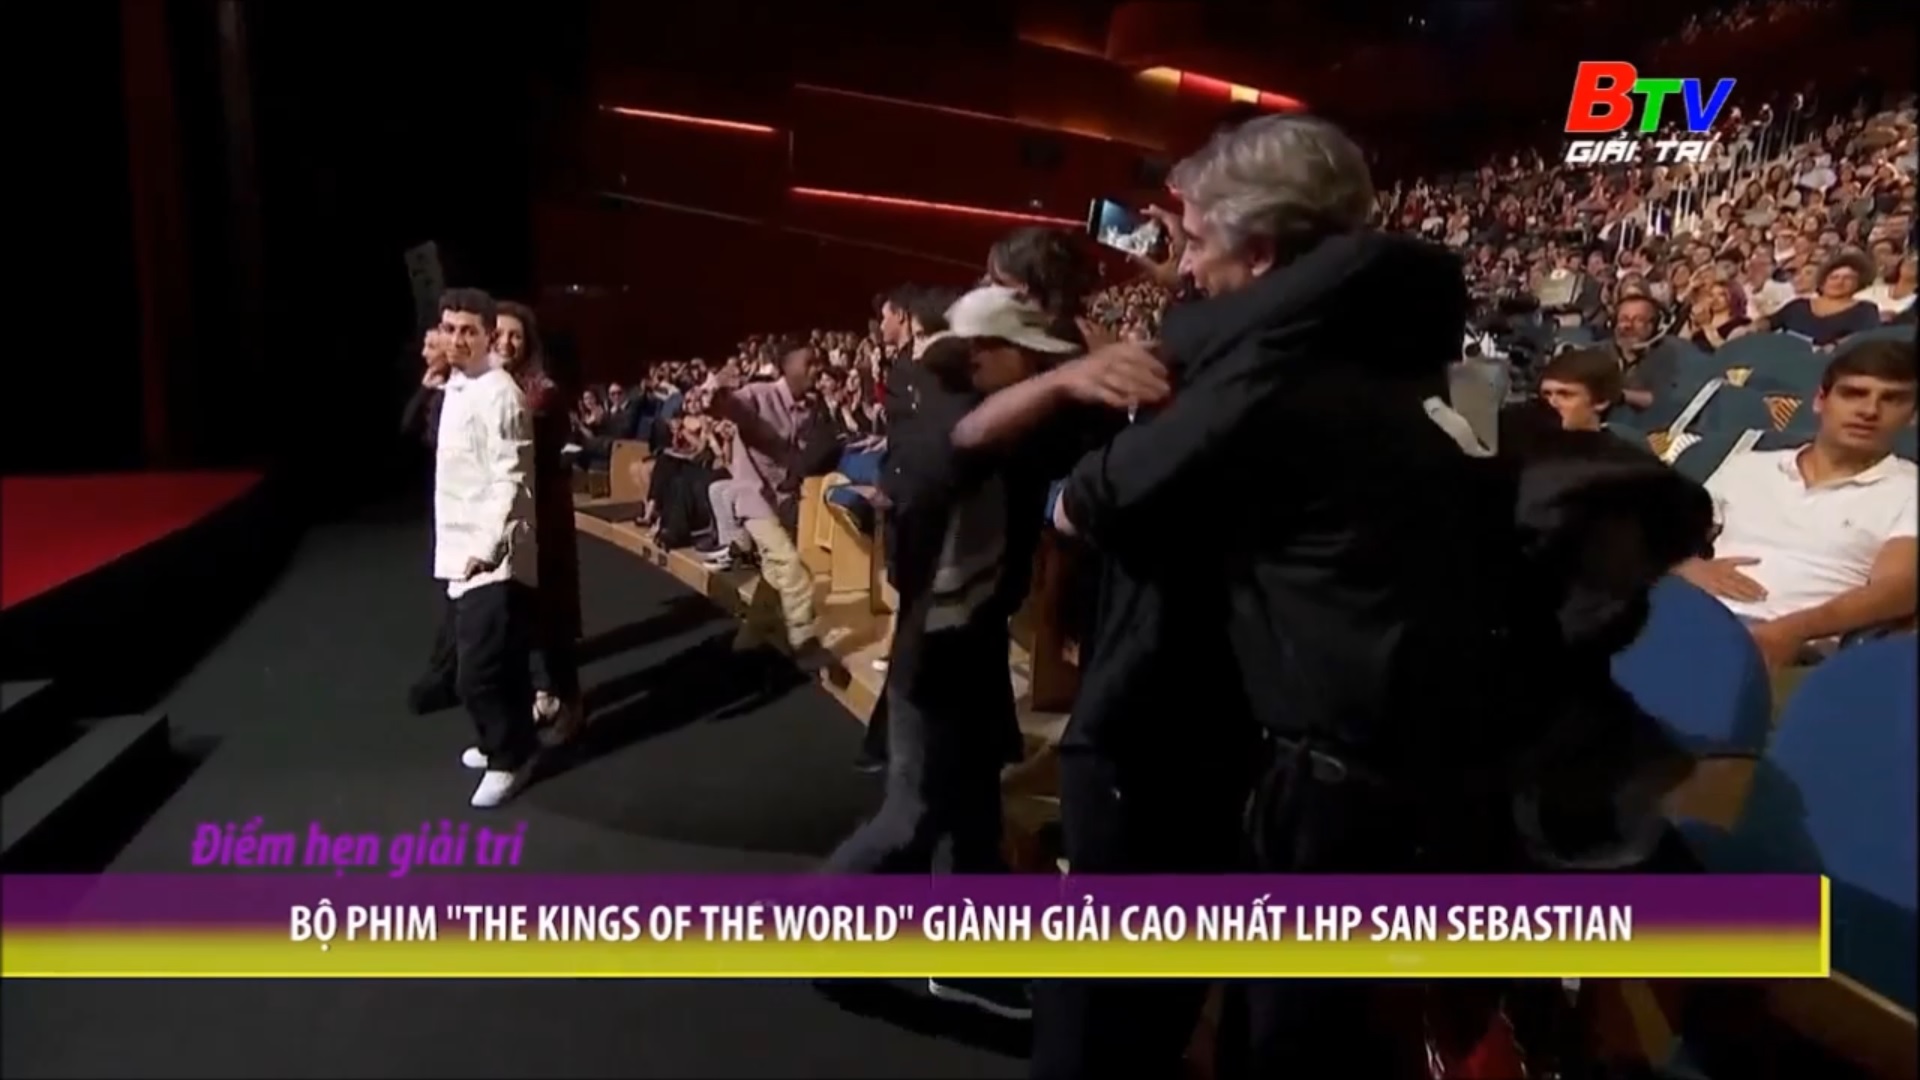 Bộ phim “The Kings Of The World” giành giải cao nhất LHP Sebastian